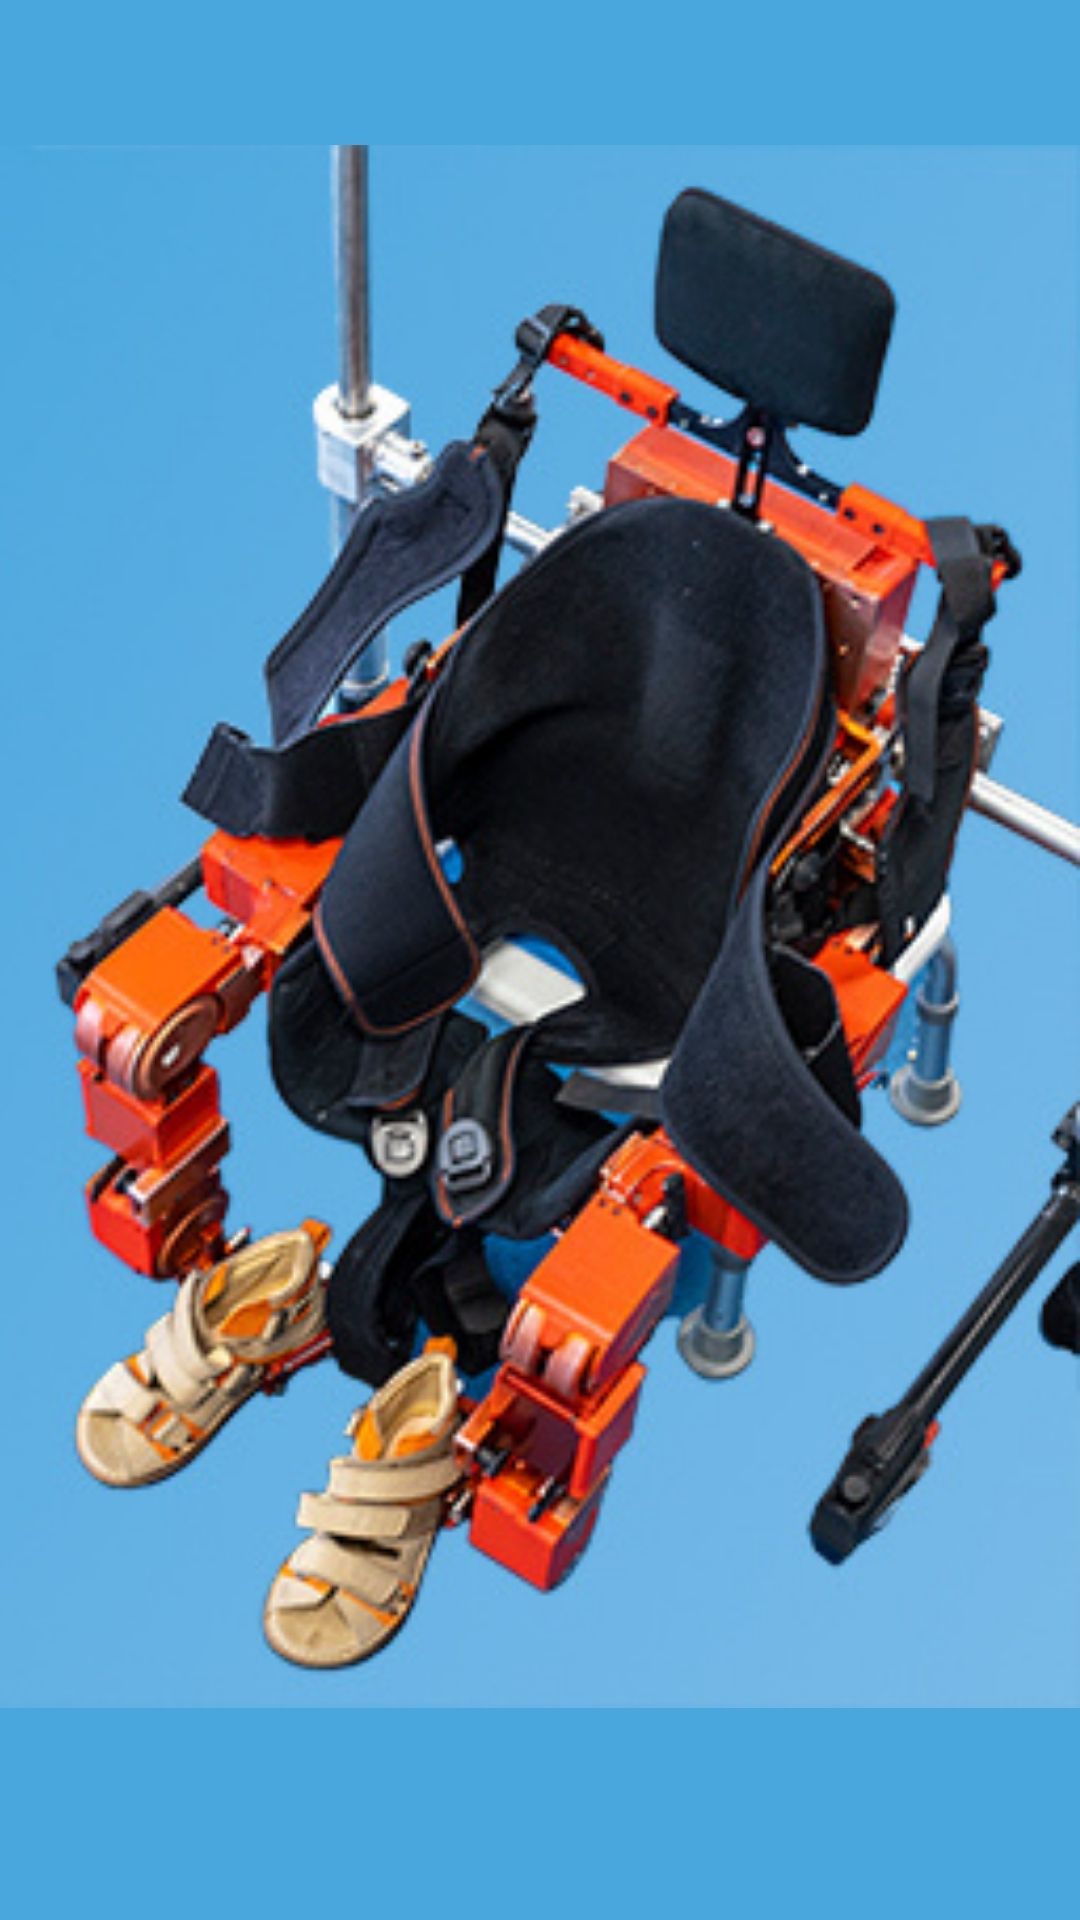 Exoesqueleto robótico adaptable del mundo para niños. Invento finalista al premio inventor europeo 2022